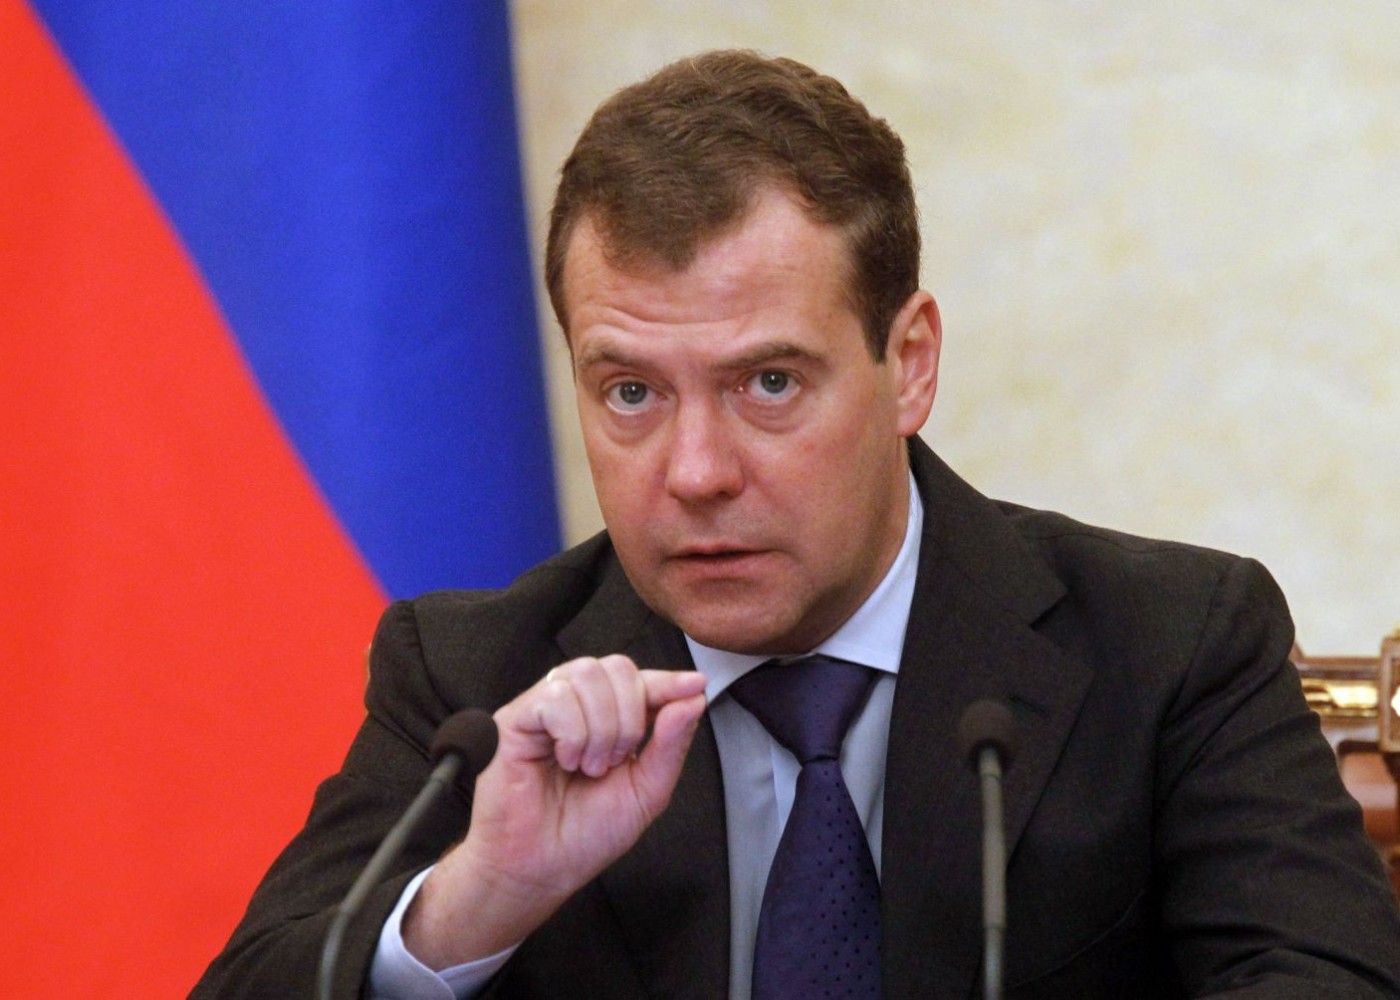 "Bu halda Vaşinqton, London və Parisə nüvə zərbəsi endiriləcək" -Medvedev